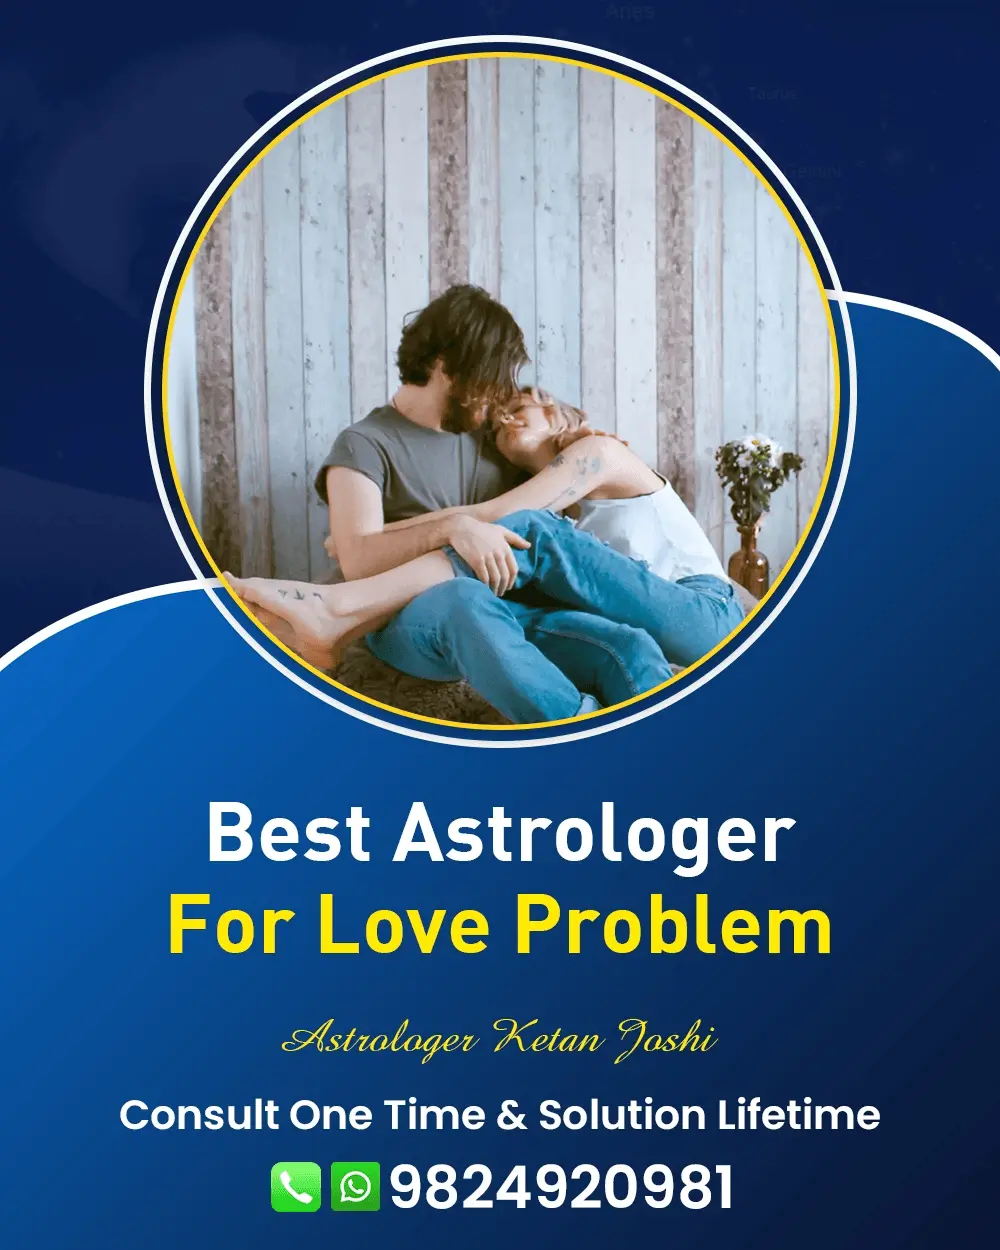 Love Problem Astrologer In Gurgaon